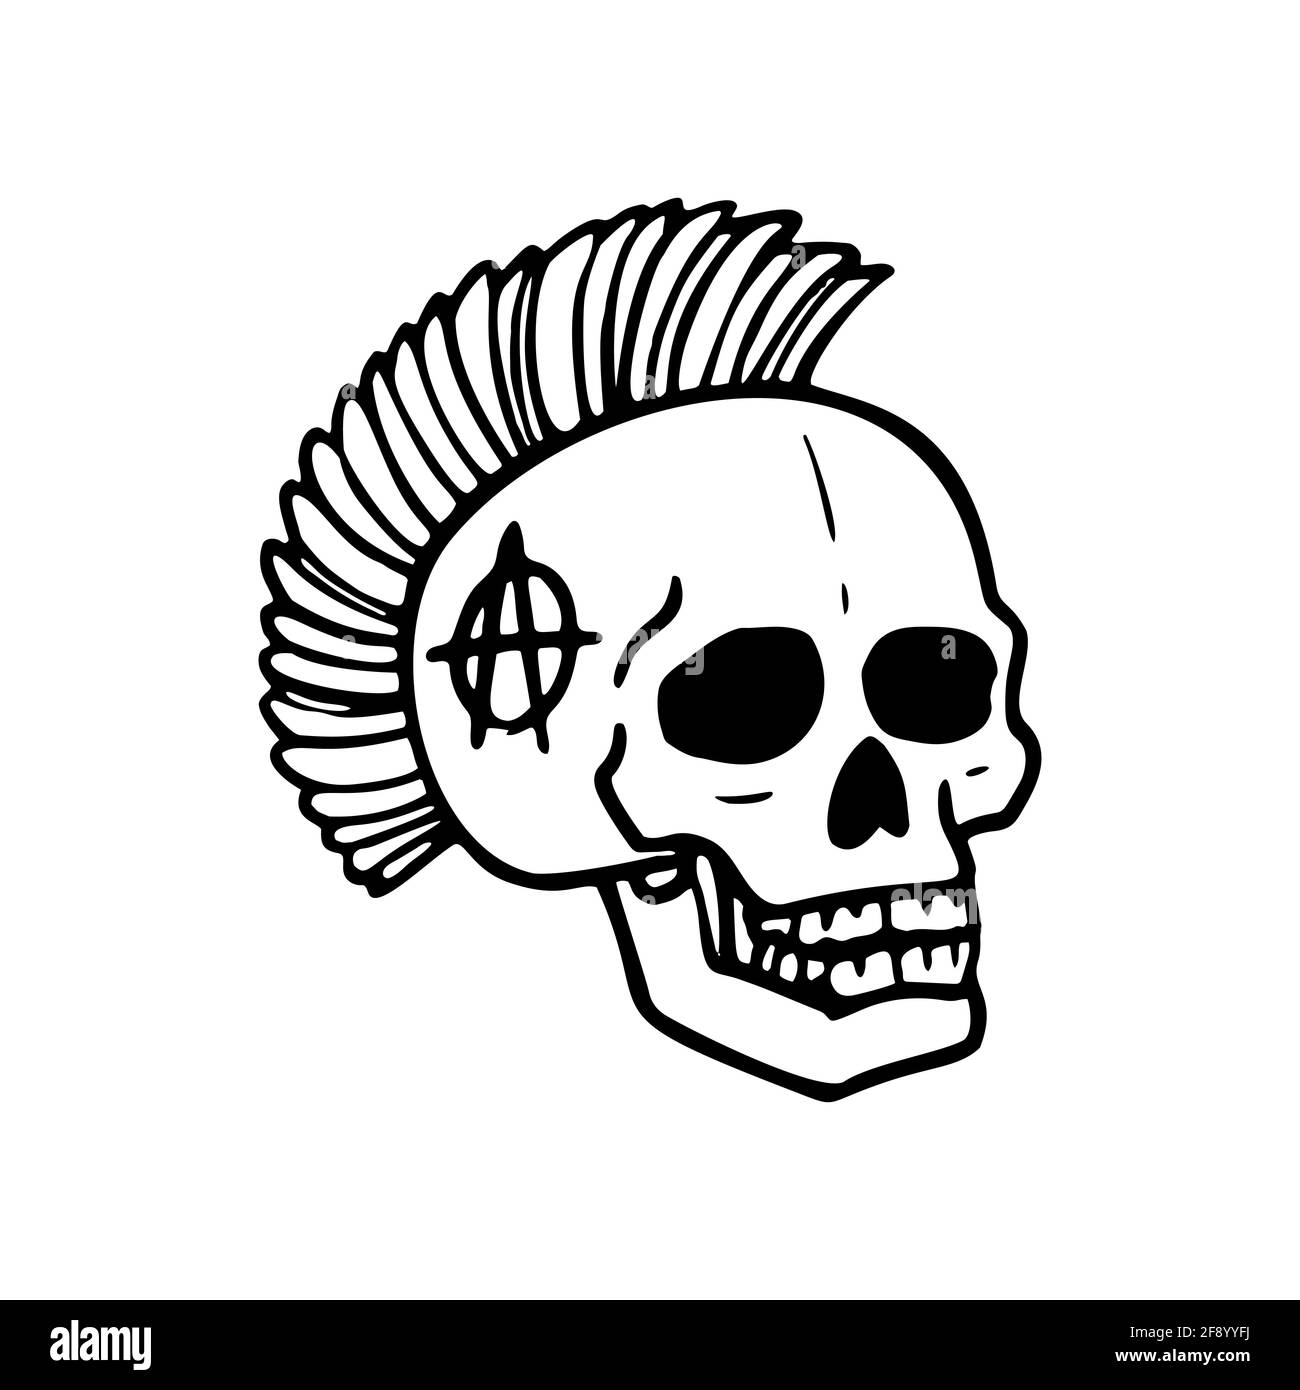 Collection Punk Rock. Crâne humain avec symbole mohawk sur fond blanc. Illustration vectorielle Illustration de Vecteur